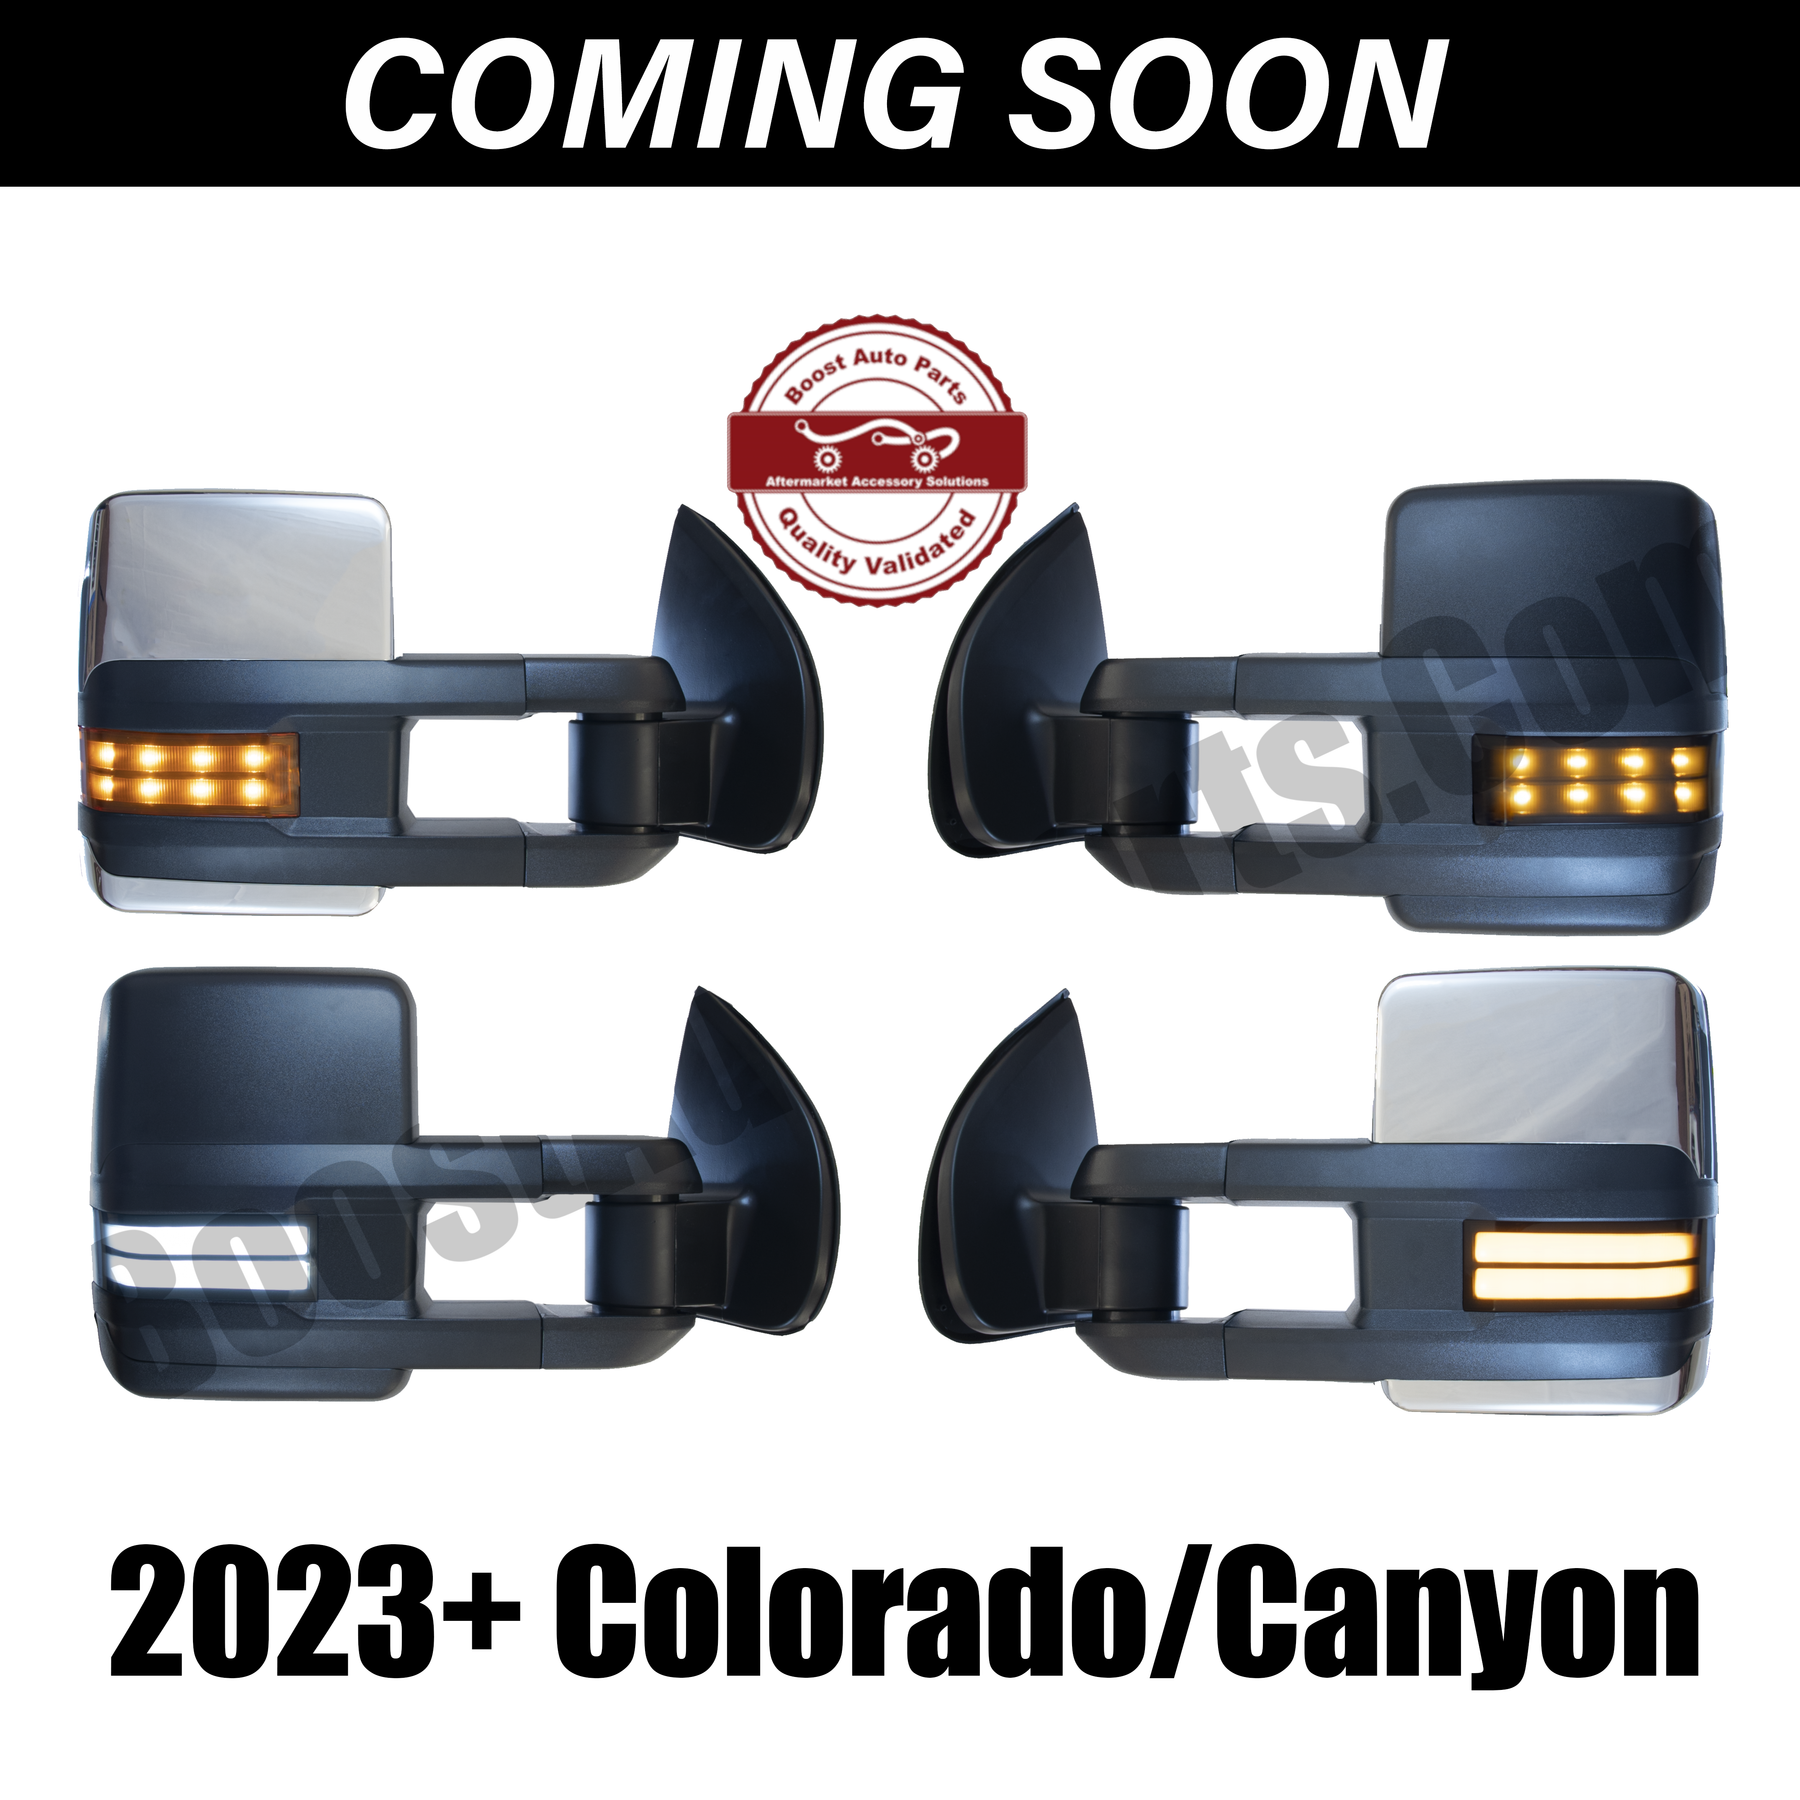 2023+ Colorado / Canyon Tow Mirrors (Style 2)